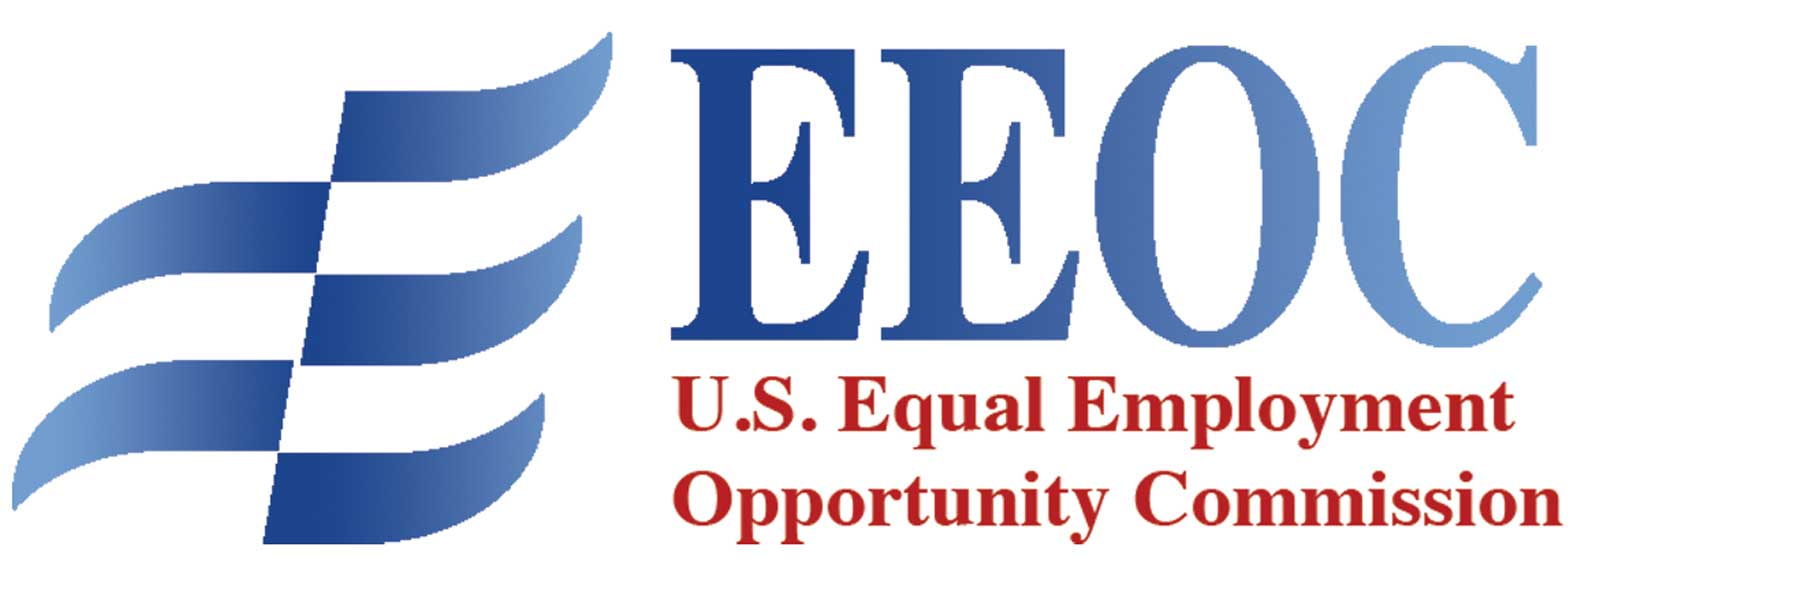 EEOC banner